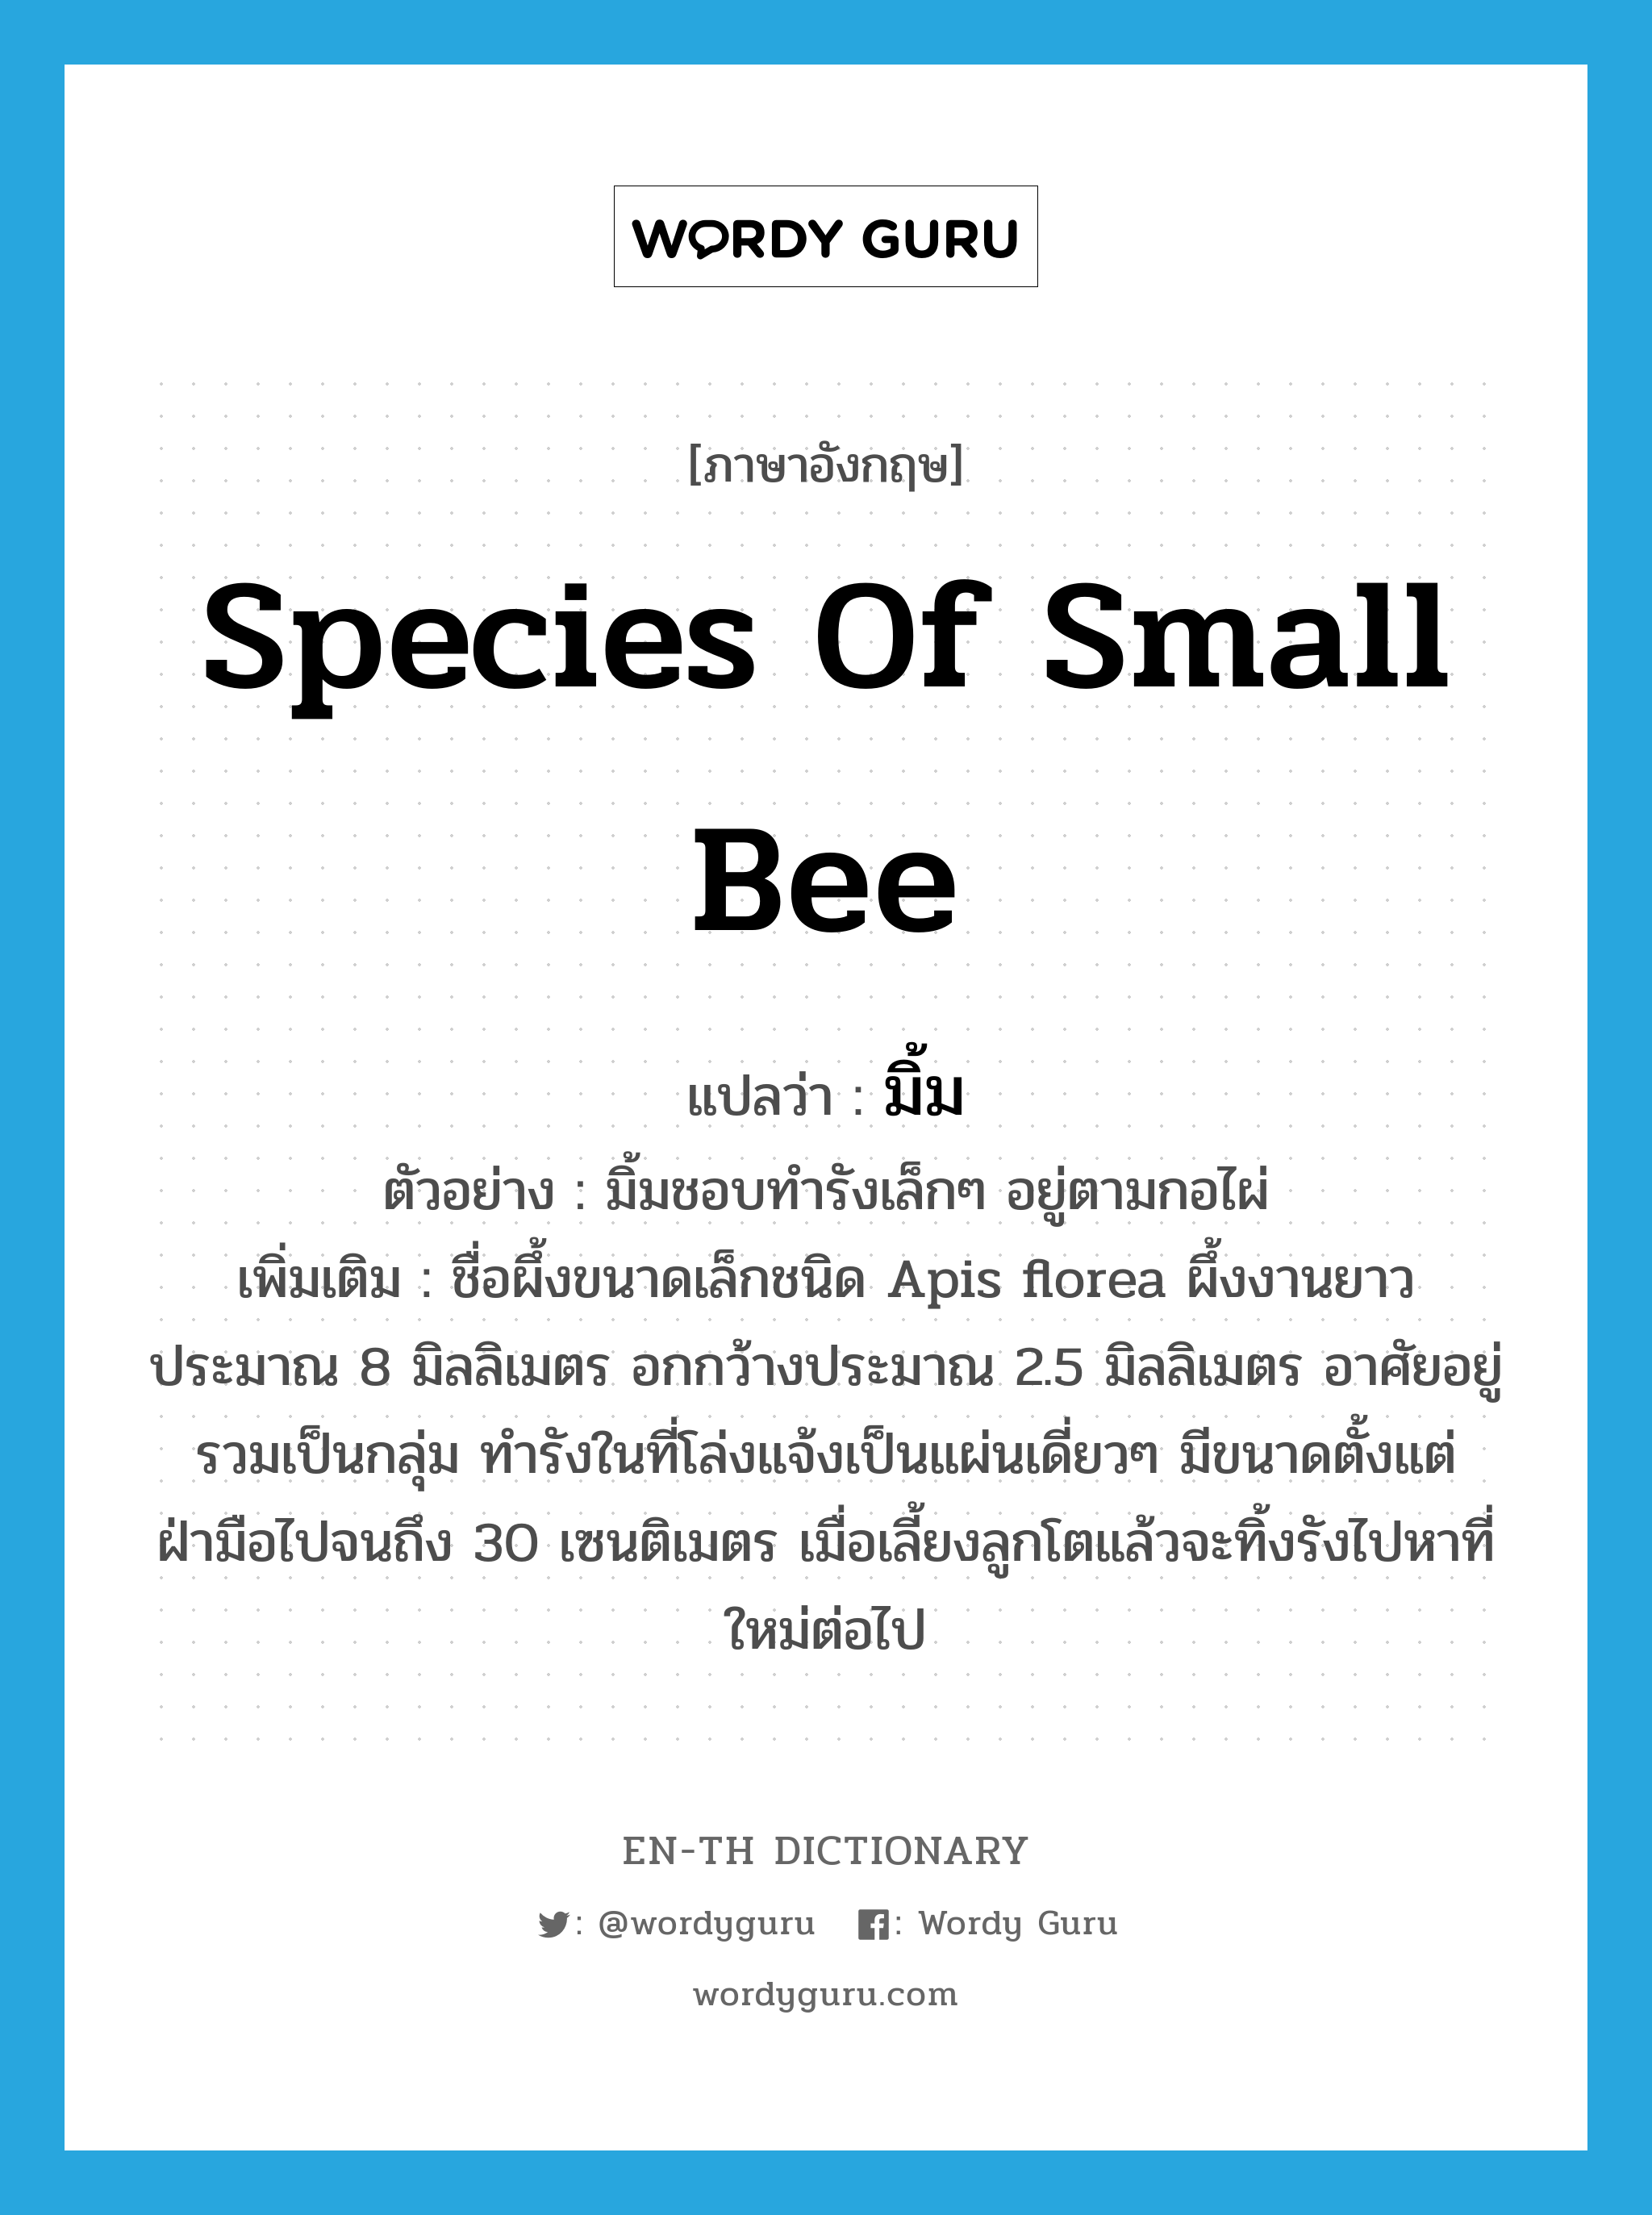 มิ้ม ภาษาอังกฤษ?, คำศัพท์ภาษาอังกฤษ มิ้ม แปลว่า species of small bee ประเภท N ตัวอย่าง มิ้มชอบทำรังเล็กๆ อยู่ตามกอไผ่ เพิ่มเติม ชื่อผึ้งขนาดเล็กชนิด Apis florea ผึ้งงานยาวประมาณ 8 มิลลิเมตร อกกว้างประมาณ 2.5 มิลลิเมตร อาศัยอยู่รวมเป็นกลุ่ม ทำรังในที่โล่งแจ้งเป็นแผ่นเดี่ยวๆ มีขนาดตั้งแต่ฝ่ามือไปจนถึง 30 เซนติเมตร เมื่อเลี้ยงลูกโตแล้วจะทิ้งรังไปหาที่ใหม่ต่อไป หมวด N